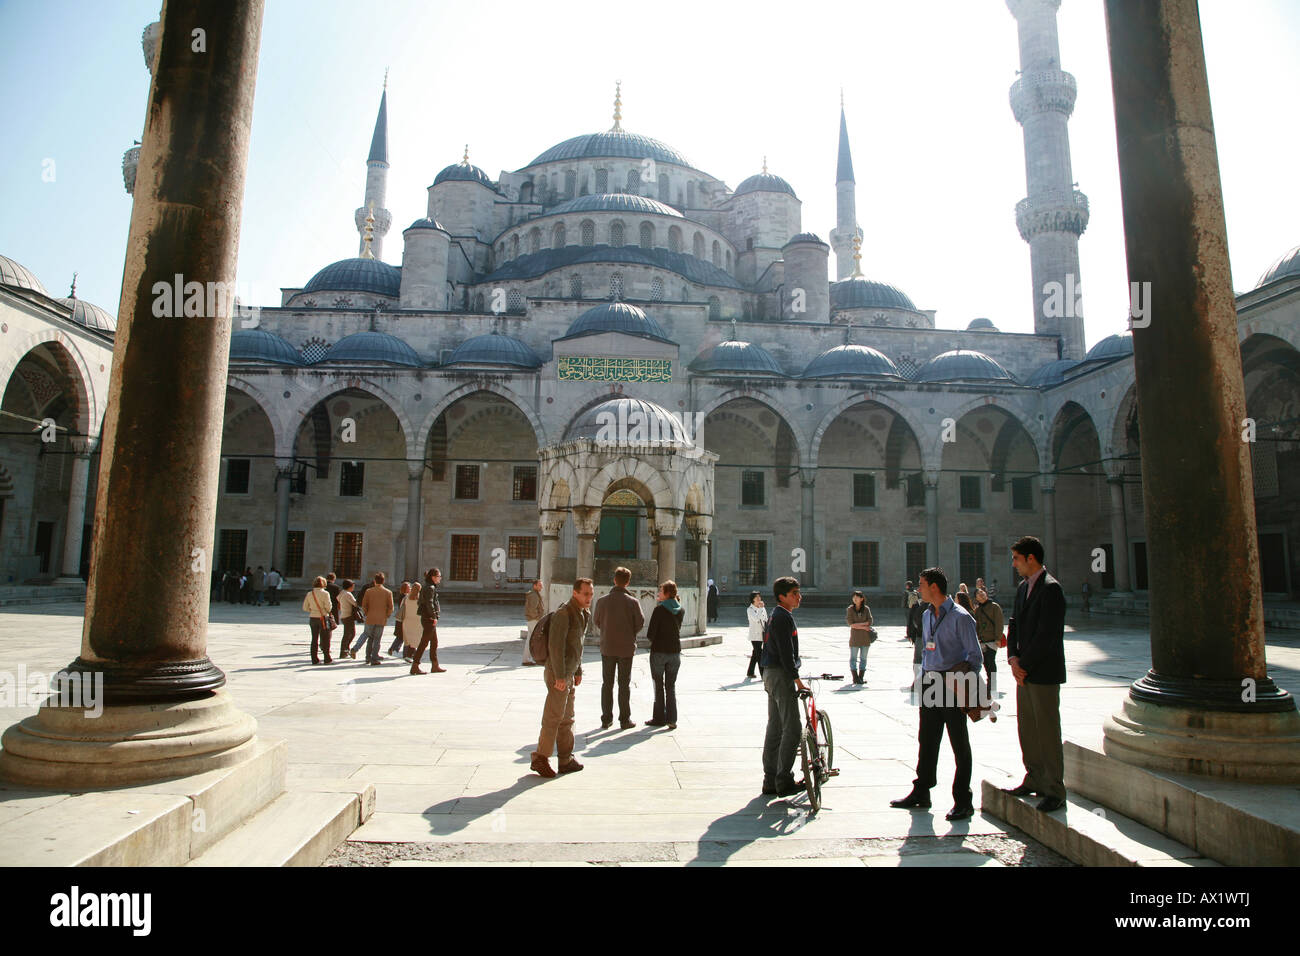 Die blaue Moschee Sultan Ahmet Camii in Istanbul Türkei Stockfoto